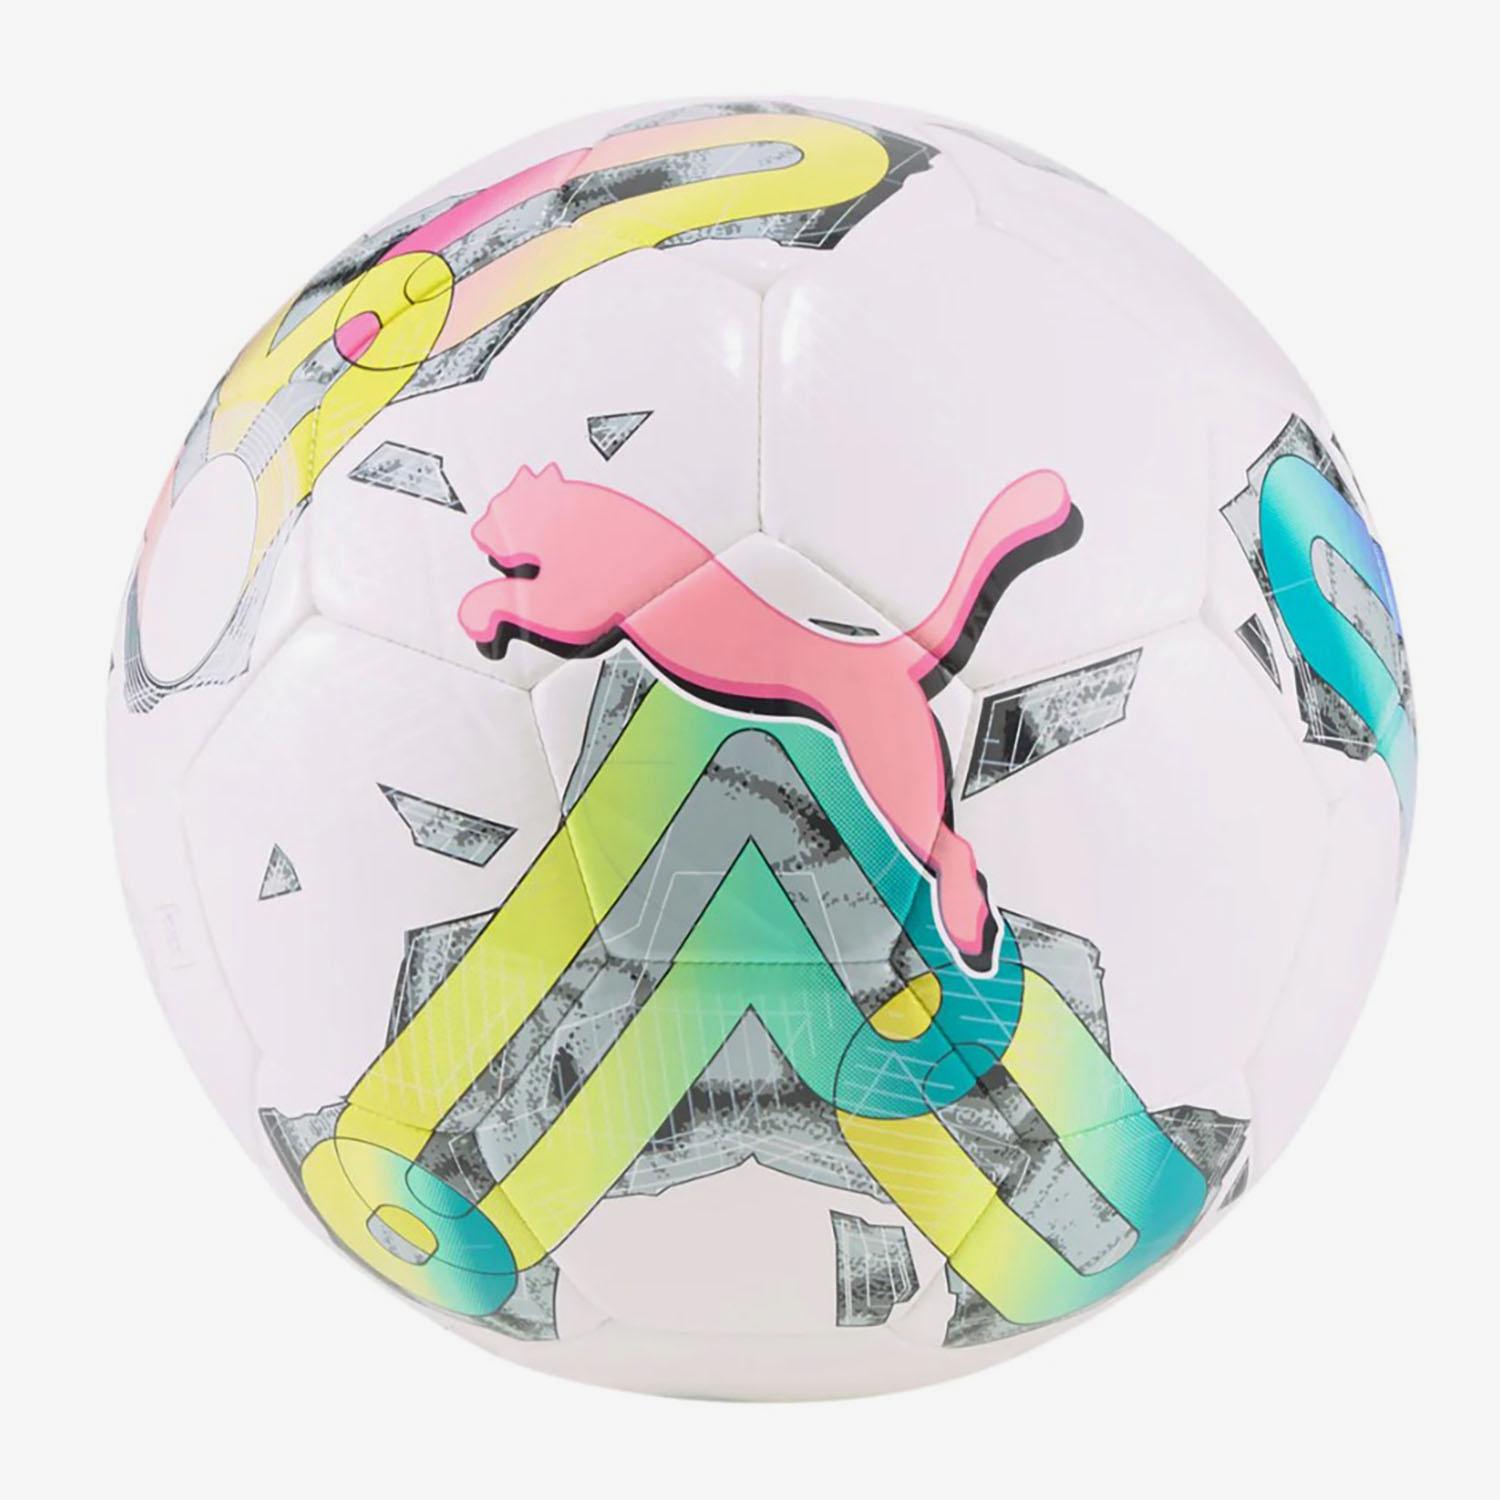 Balón Puma Orbita La Liga 1 2023-24 talla mini blanco